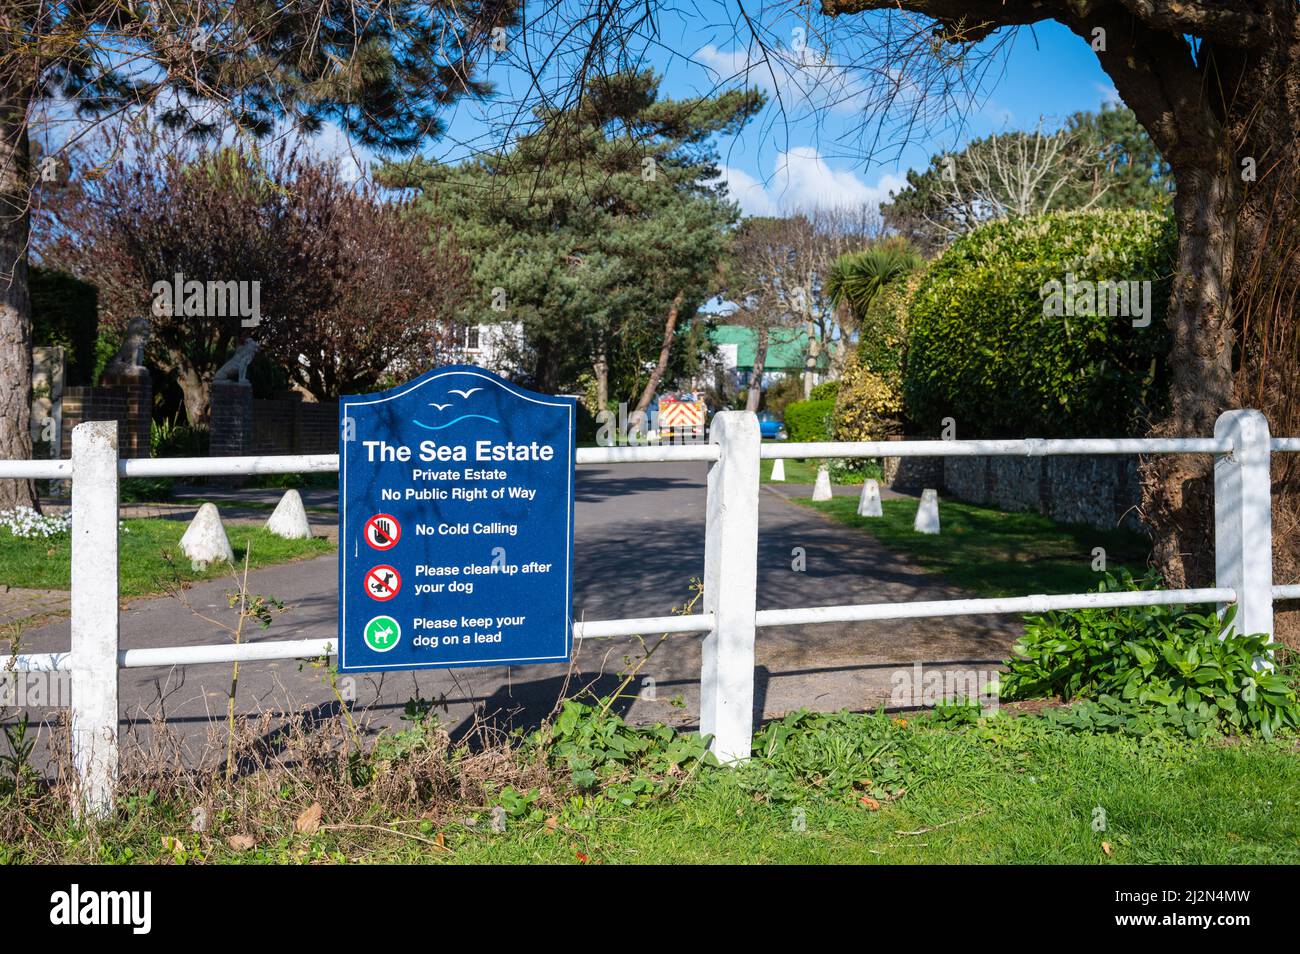 Panneau à l'entrée d'un domaine privé sans droit de passage public dans le domaine de la mer, Rustington, West Sussex, Angleterre, Royaume-Uni. Banque D'Images